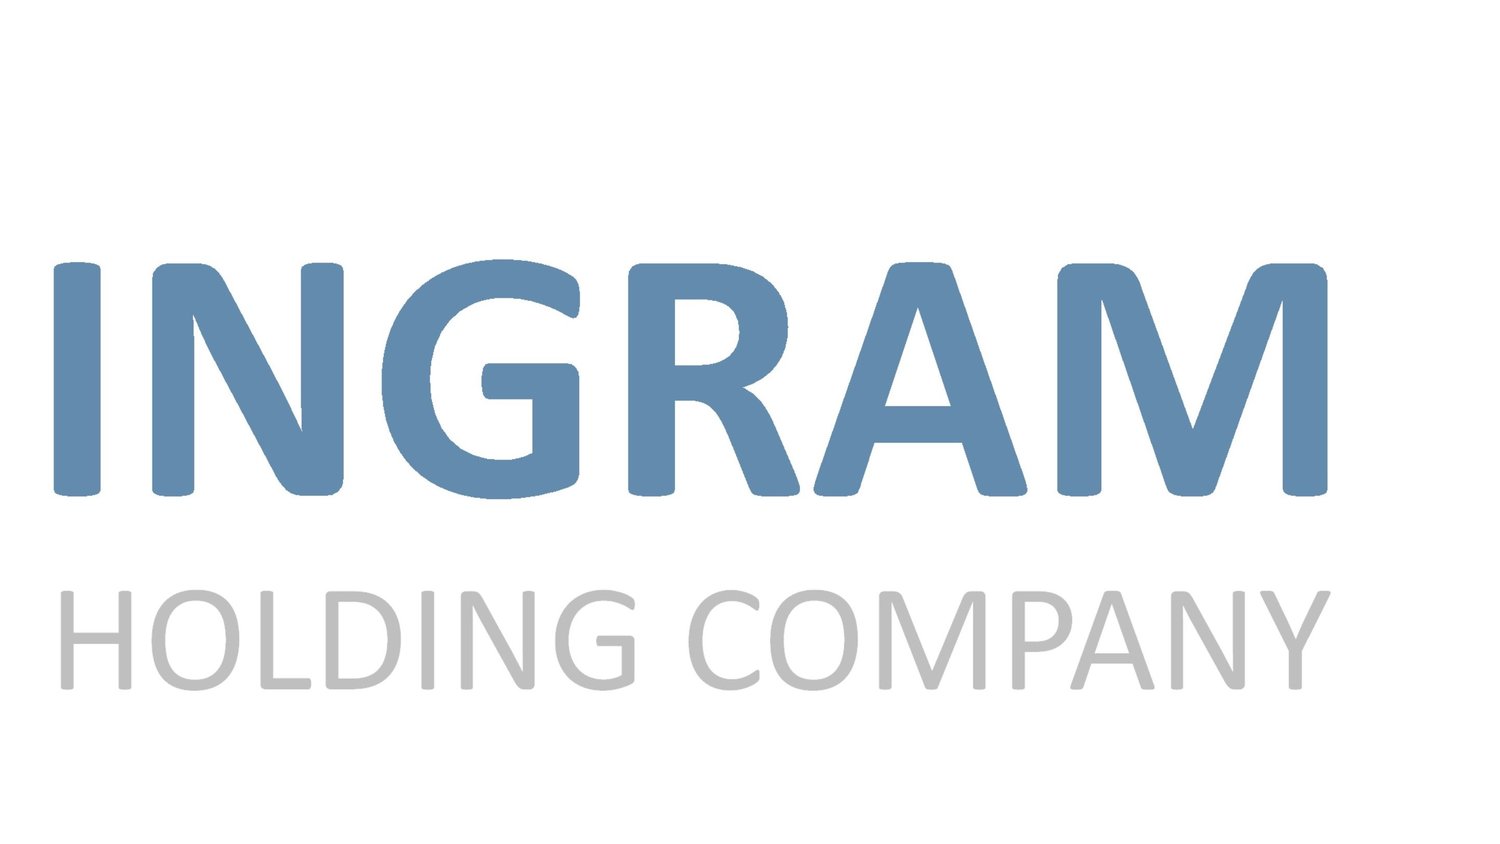 INGRAM Holding Company